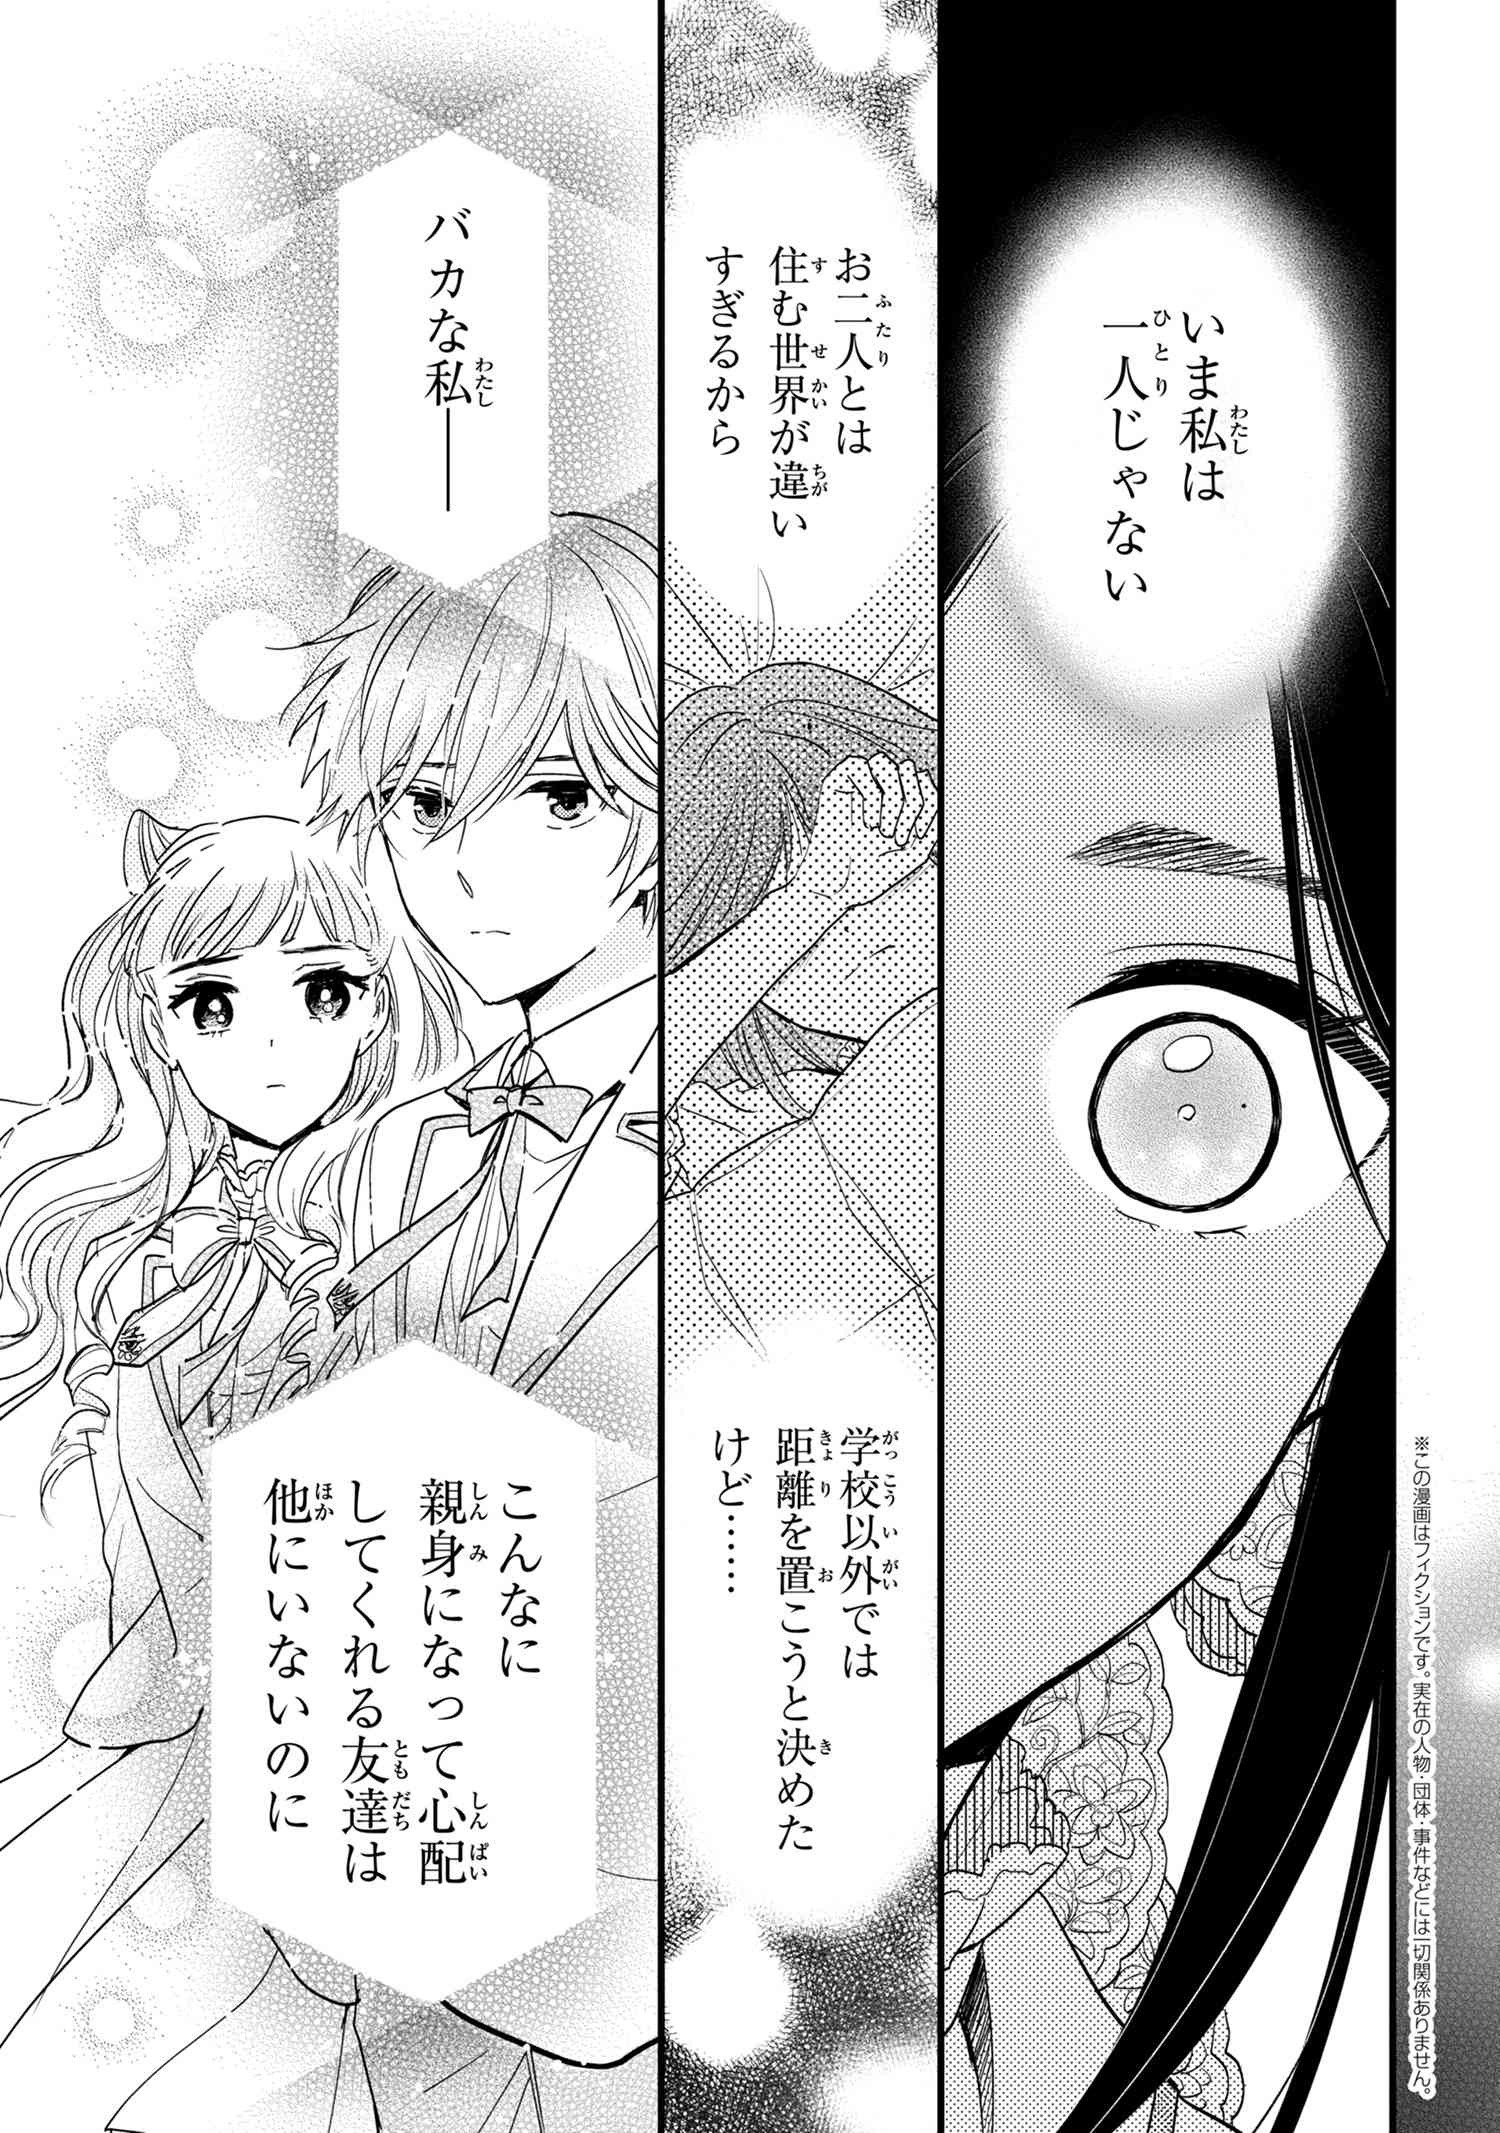 Reiko no Fuugi Akuyaku Reijou to Yobarete imasu ga, tada no Binbou Musume desu - Chapter 13-3 - Page 1